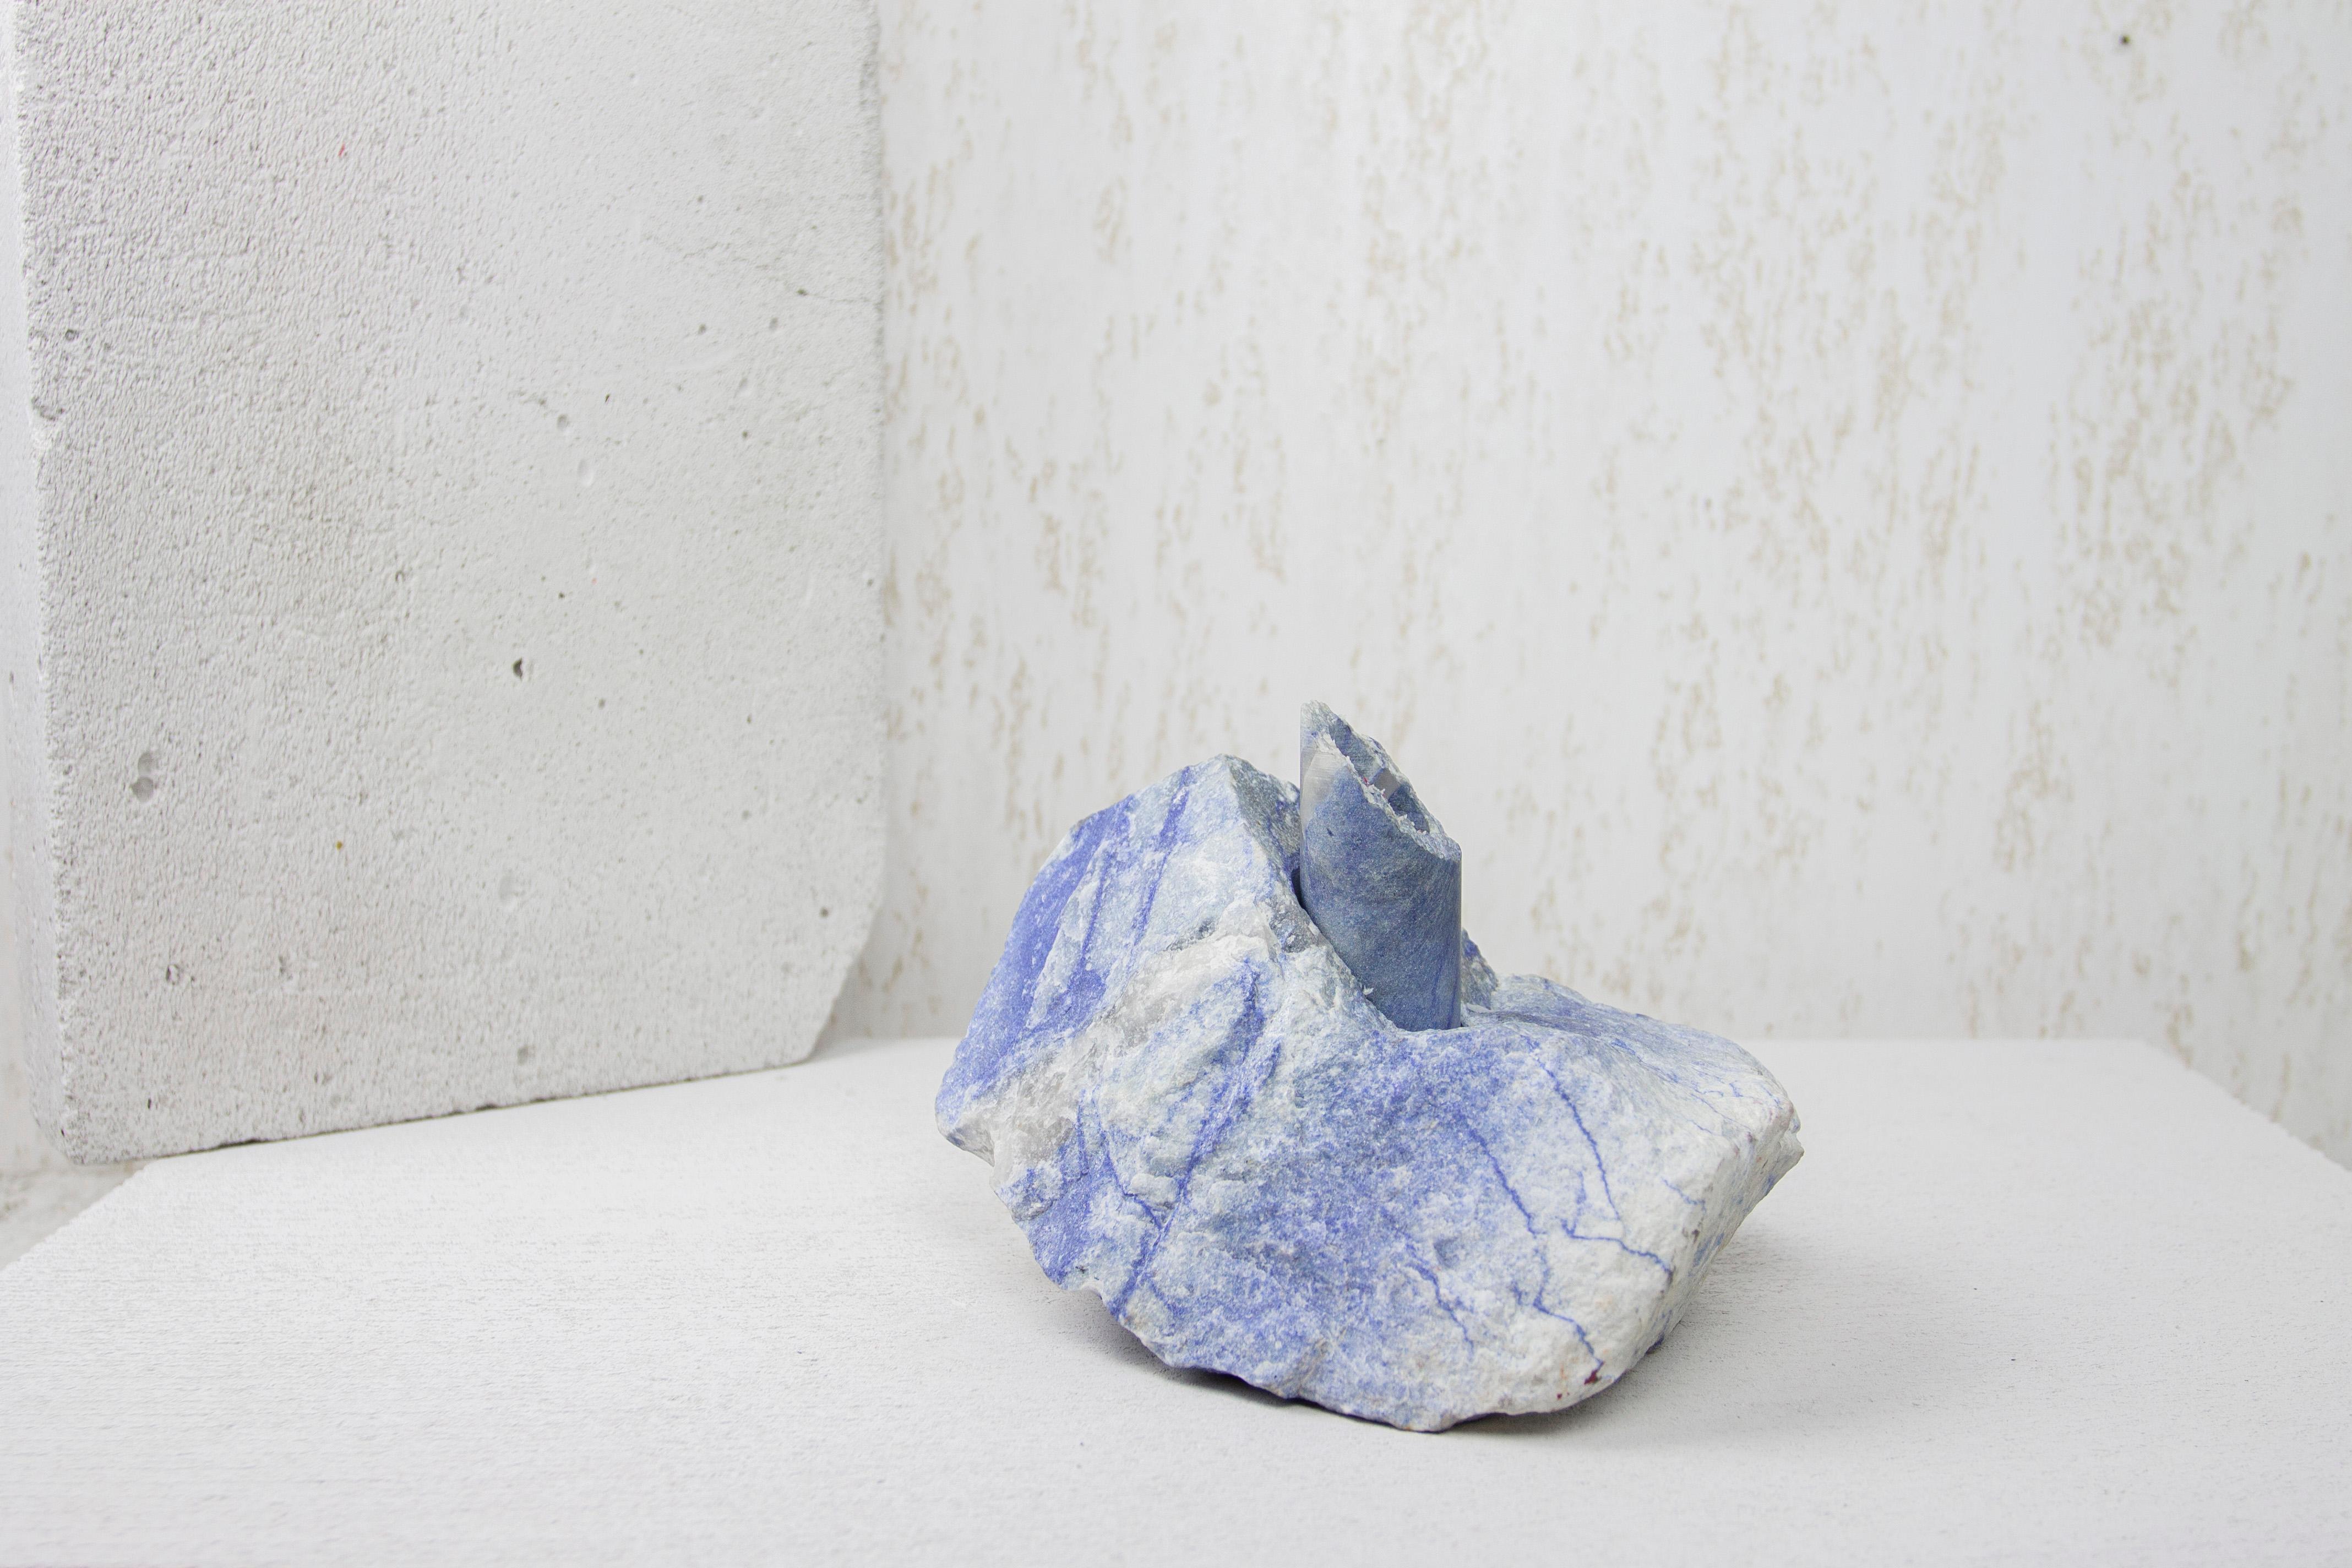 Abra-Kandelaber II aus blauem Quarz von Studio DO
Abmessungen: T 19 x B 13 x H 13 cm
MATERIALIEN: Blauer Quarz, Aluminium.
3,2 kg.

Stein und Feuer sind durch ein zeitloses Band verbunden. Das Funkeln, das durch das Aufeinandertreffen zweier Steine